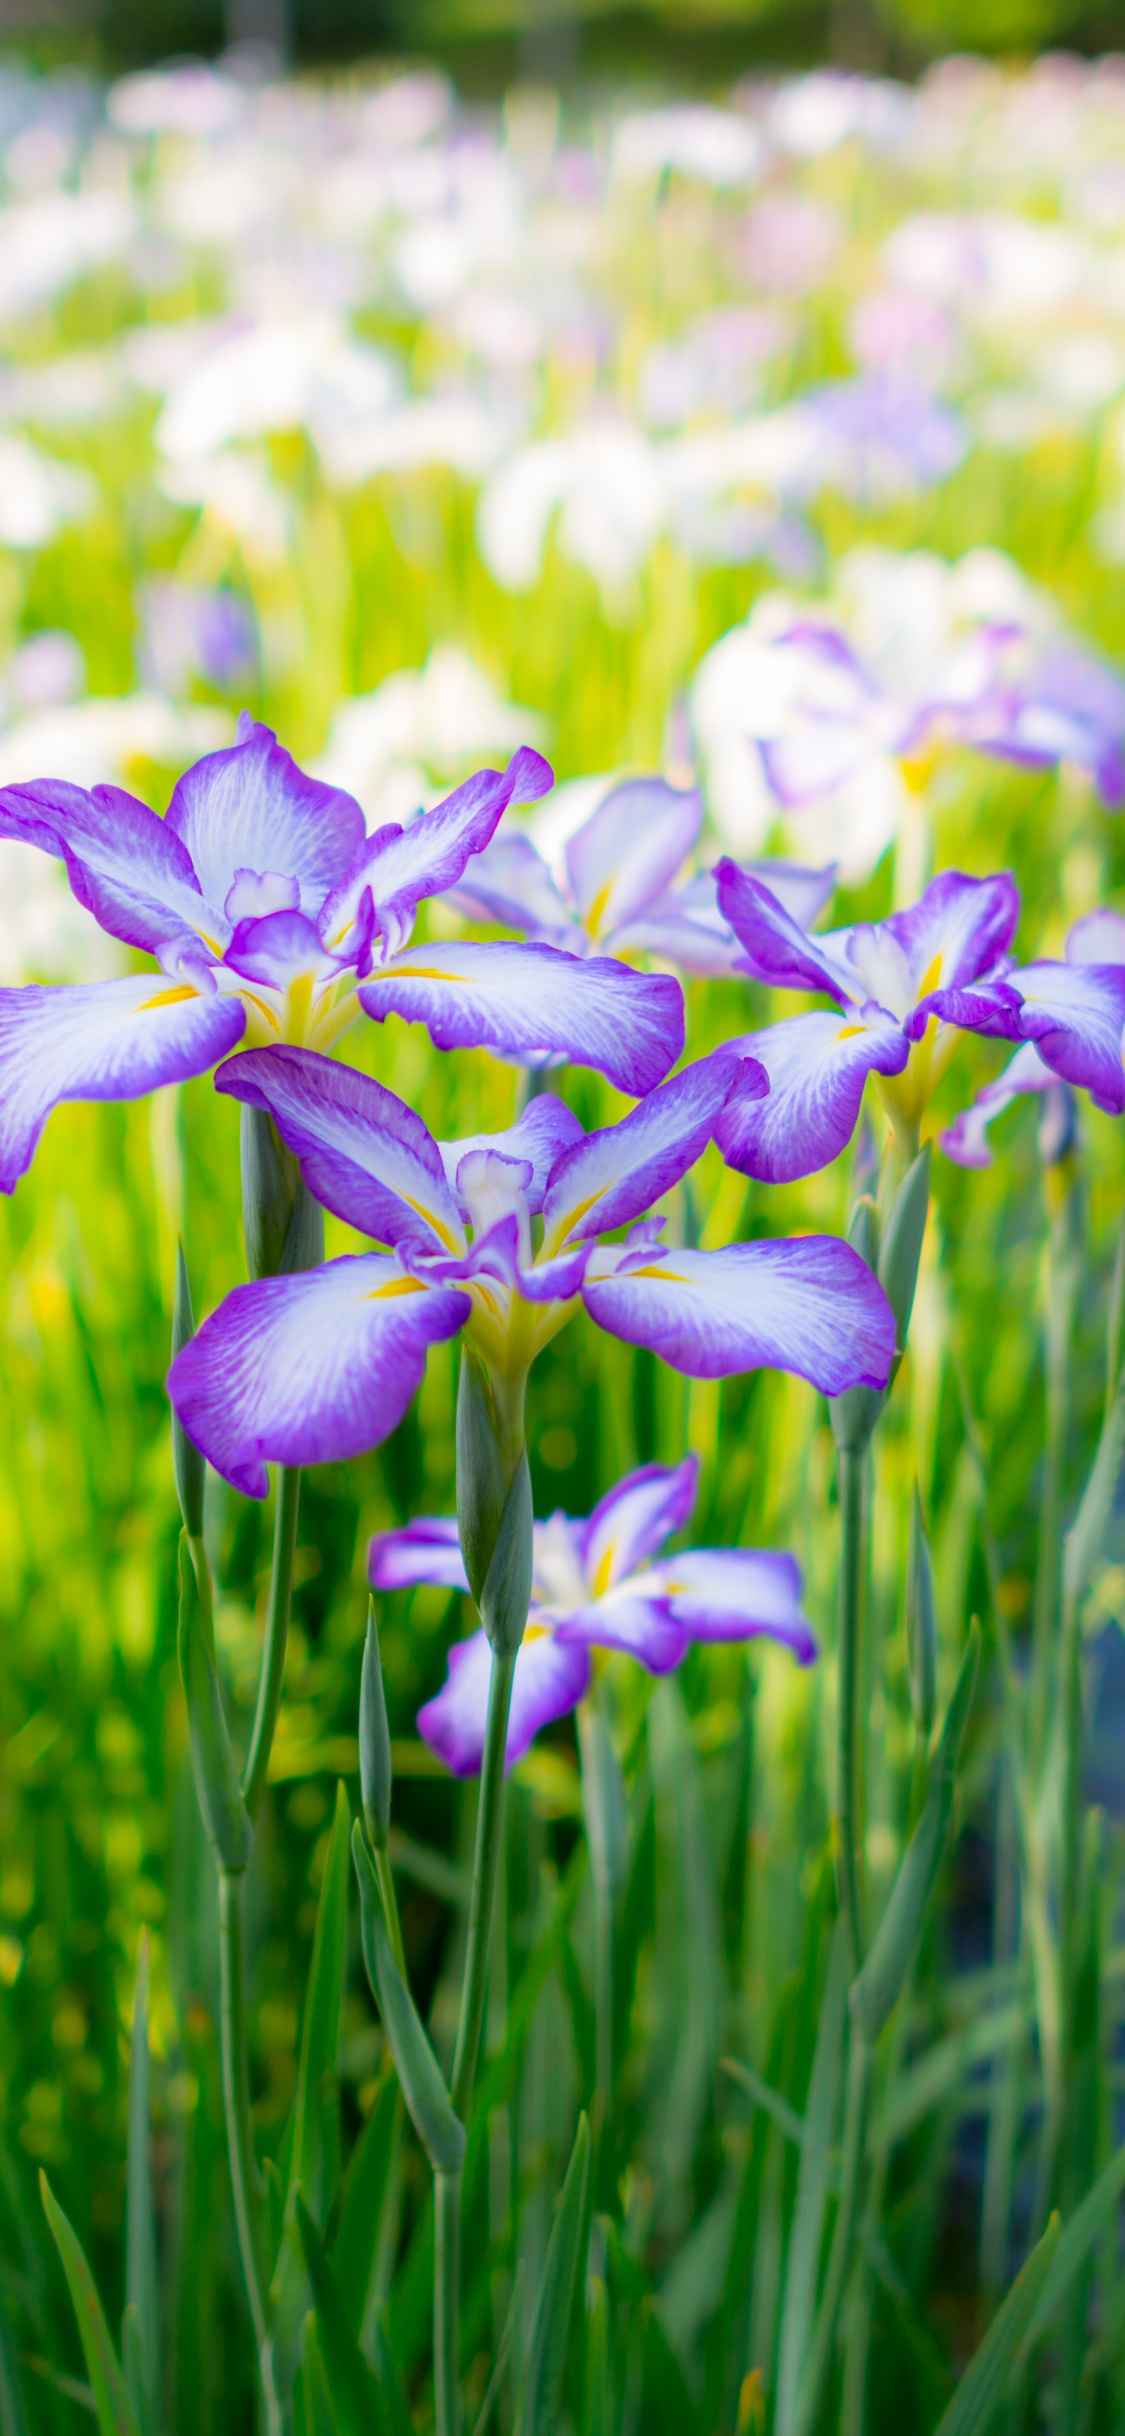 Purple and White Flowers in Tilt Shift Lens. Wallpaper in 1125x2436 Resolution